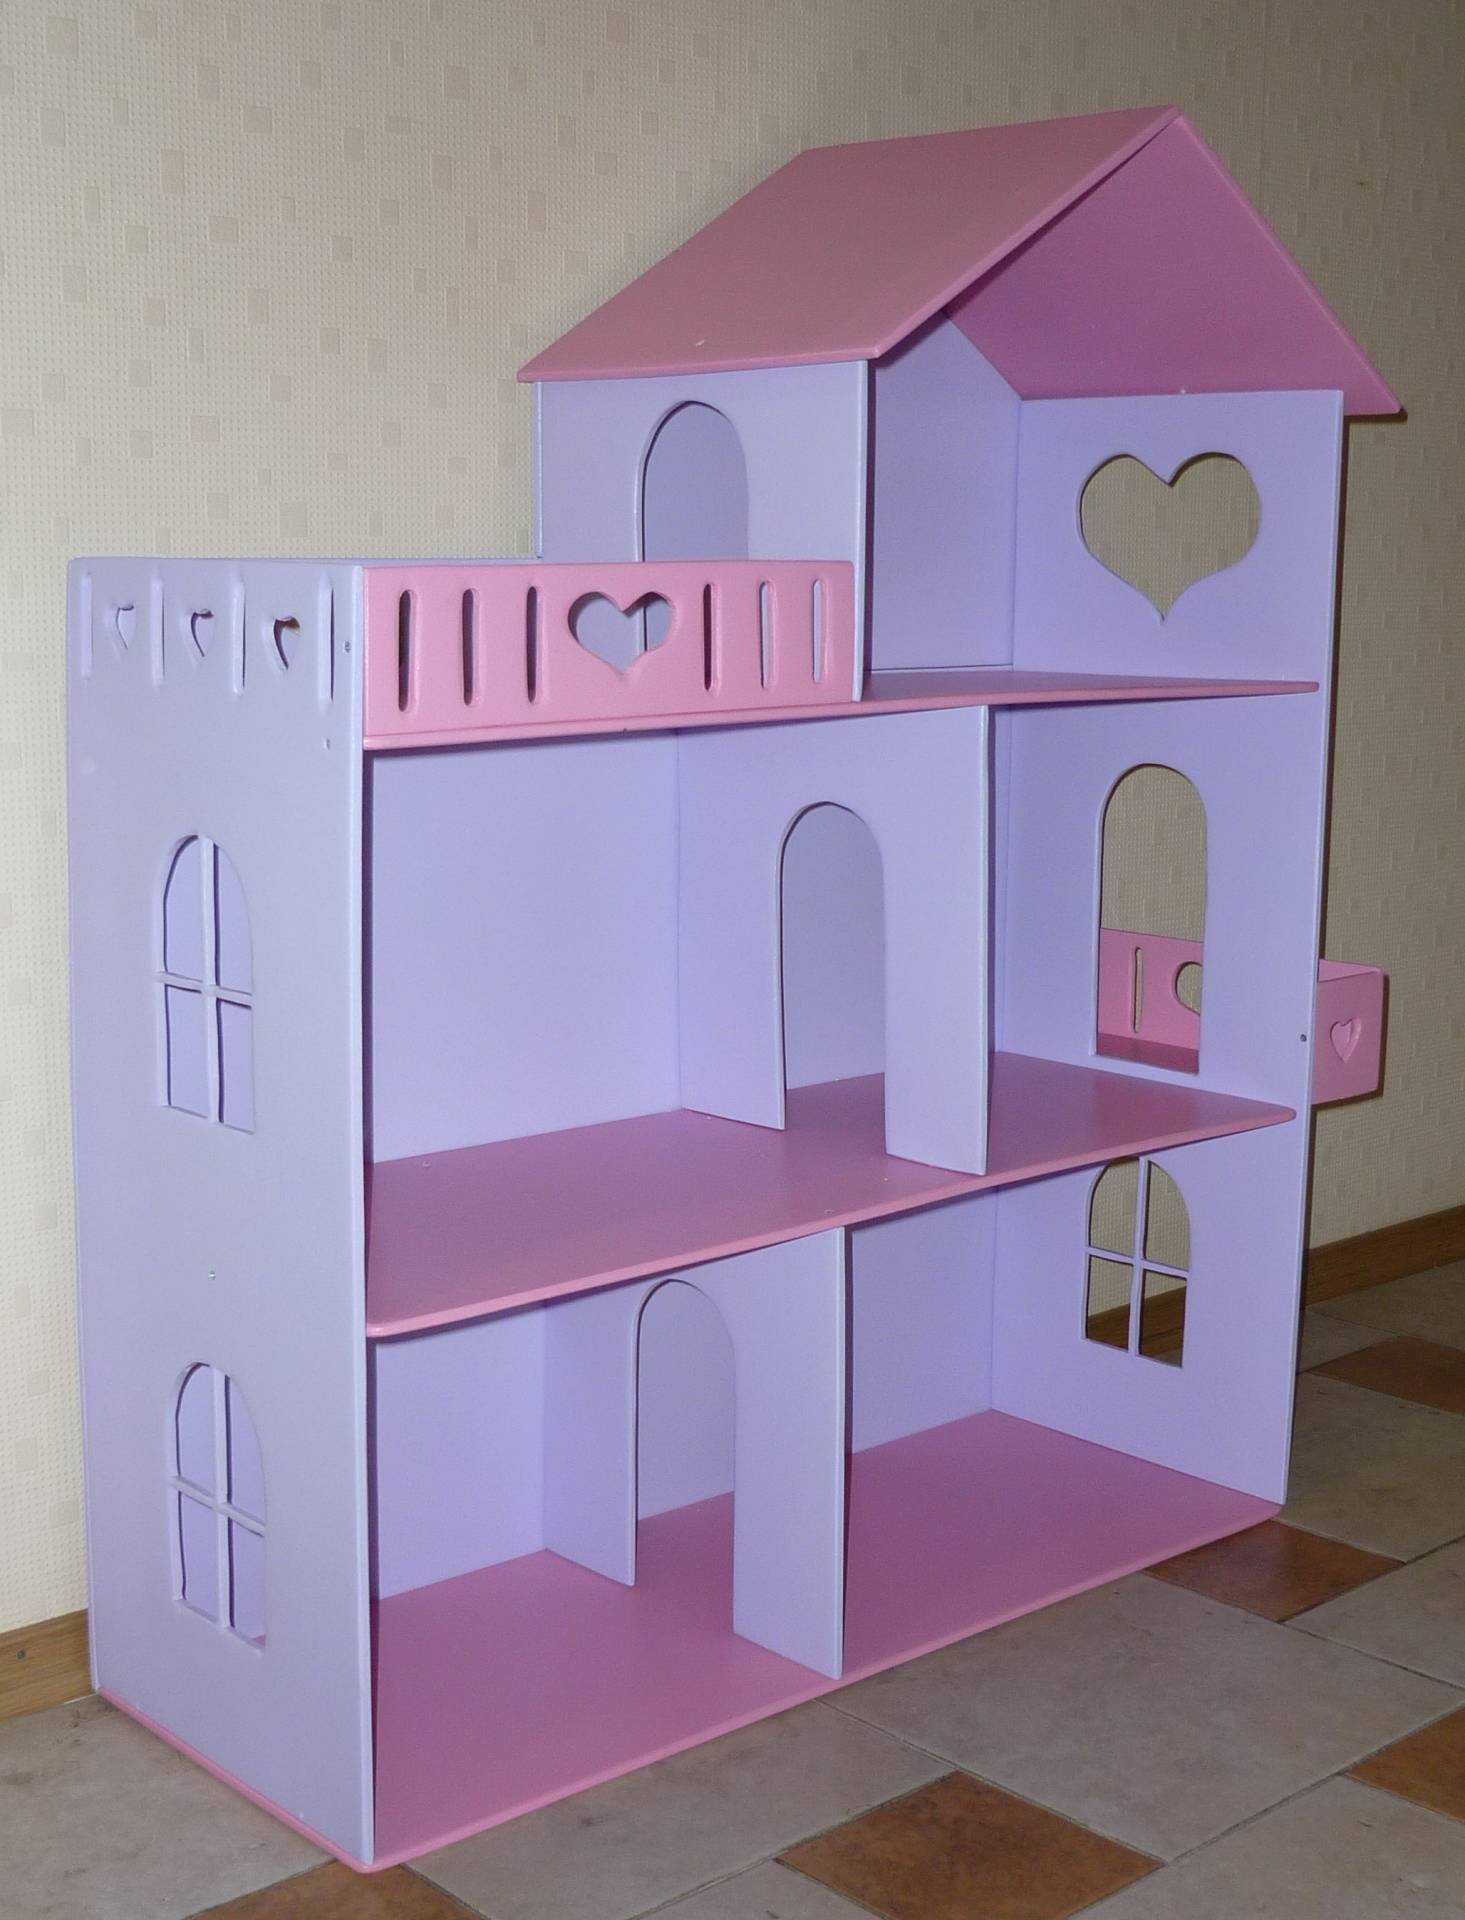 Кукольный домик своими руками - 70 фото идей домиков из фанеры, картона, дерева